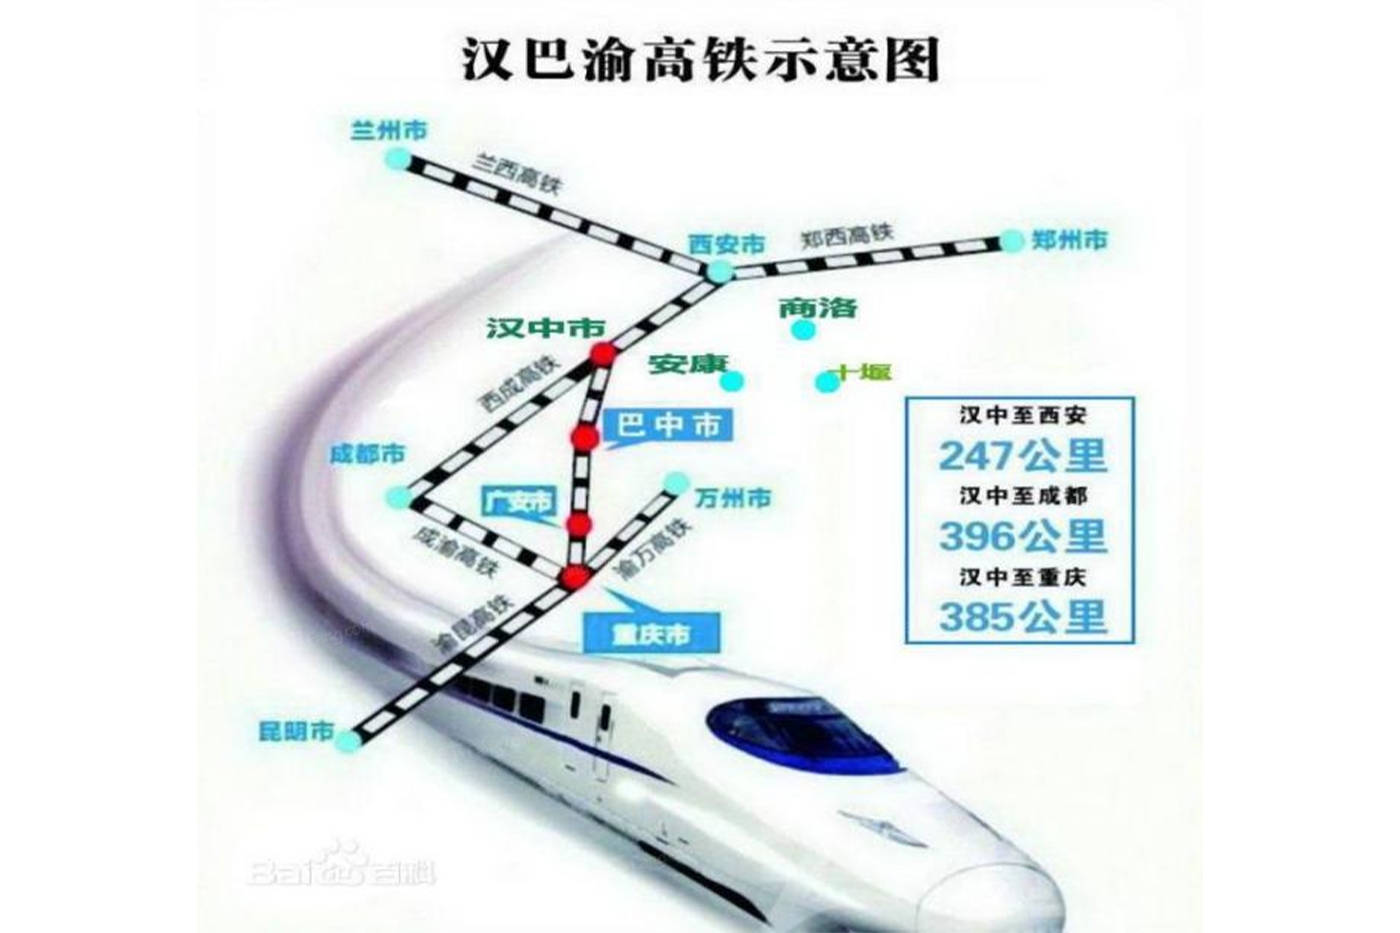 兰渝铁路,渝西高铁等高速铁路路网重要枢纽,距巴中东站(高铁站)仅5